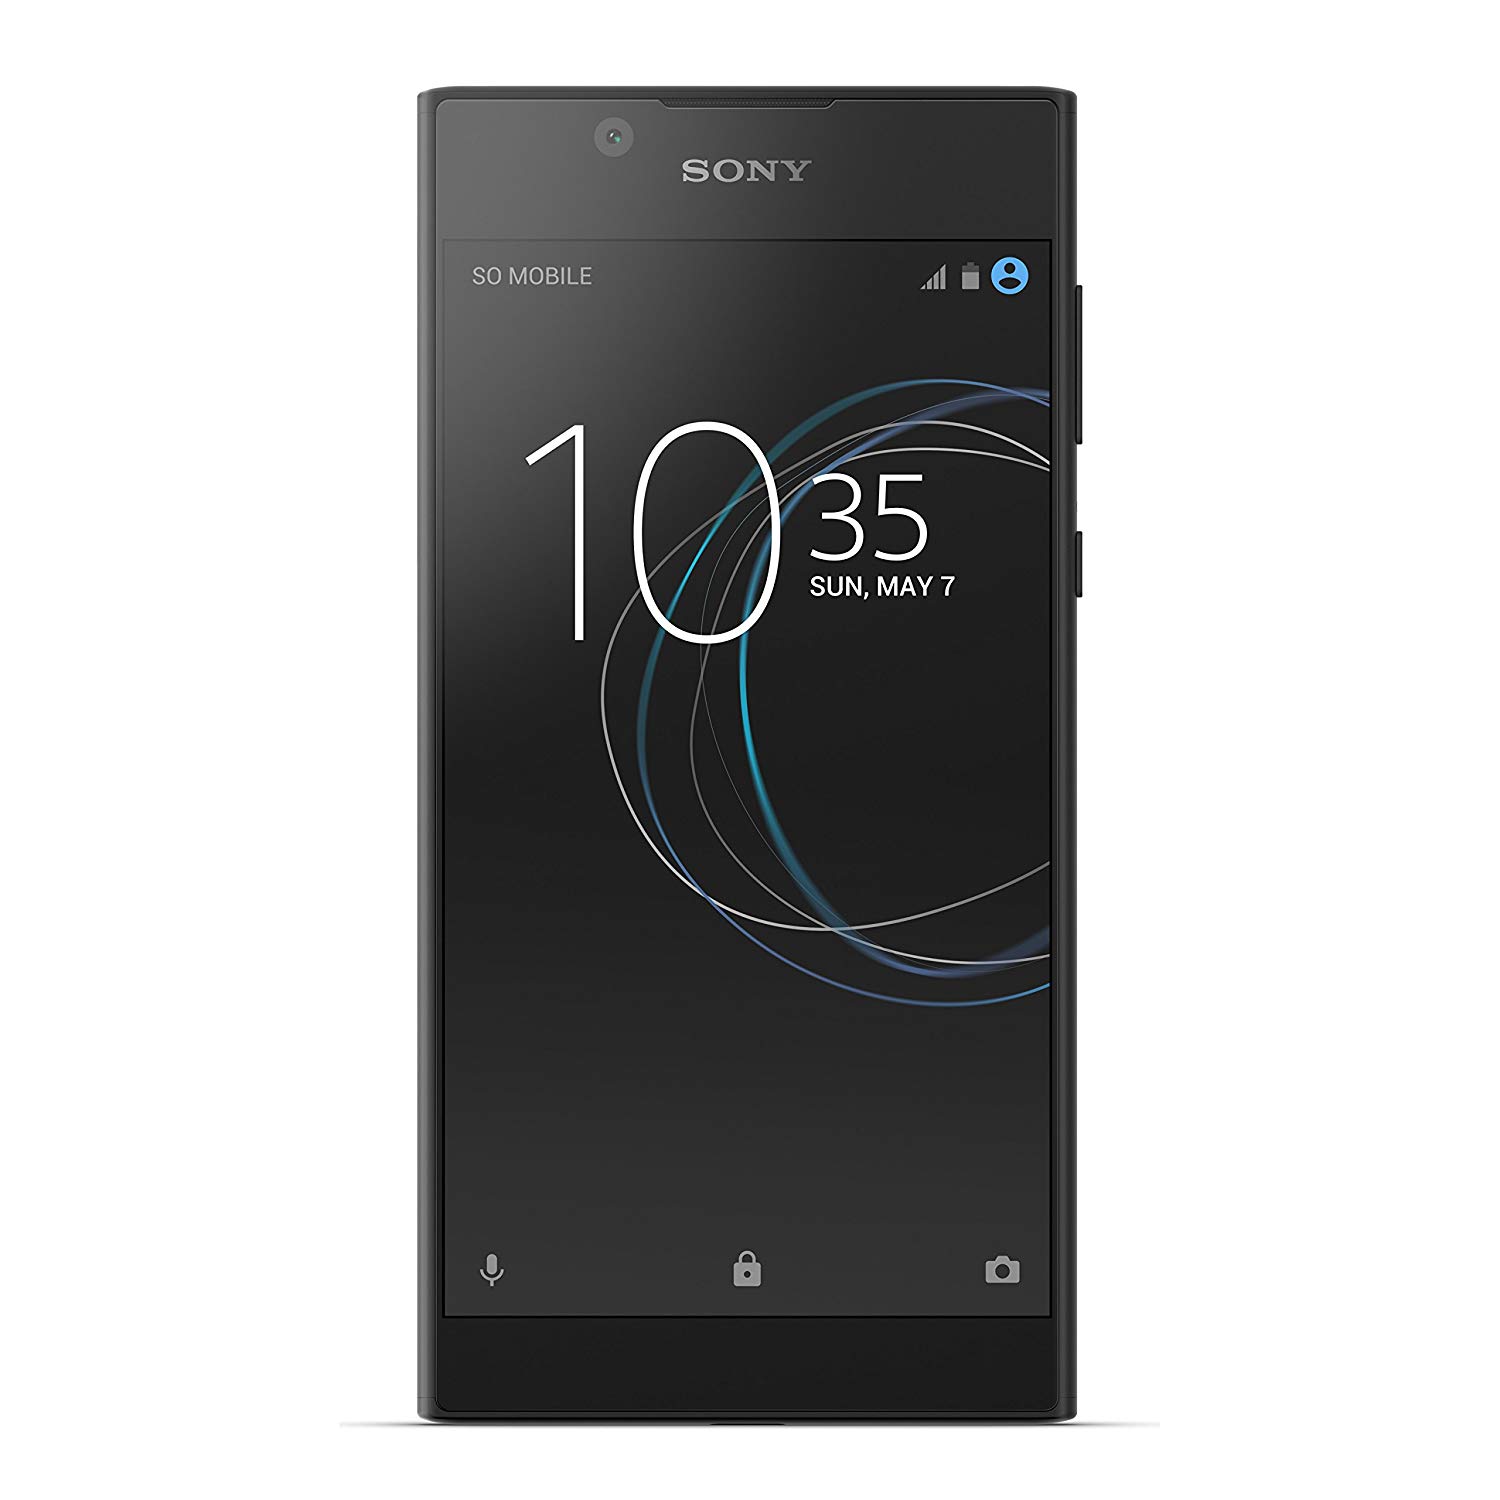 Sony Xperia L1 - разблокированный смартфон - 16 ГБ - черный (гарантия США)